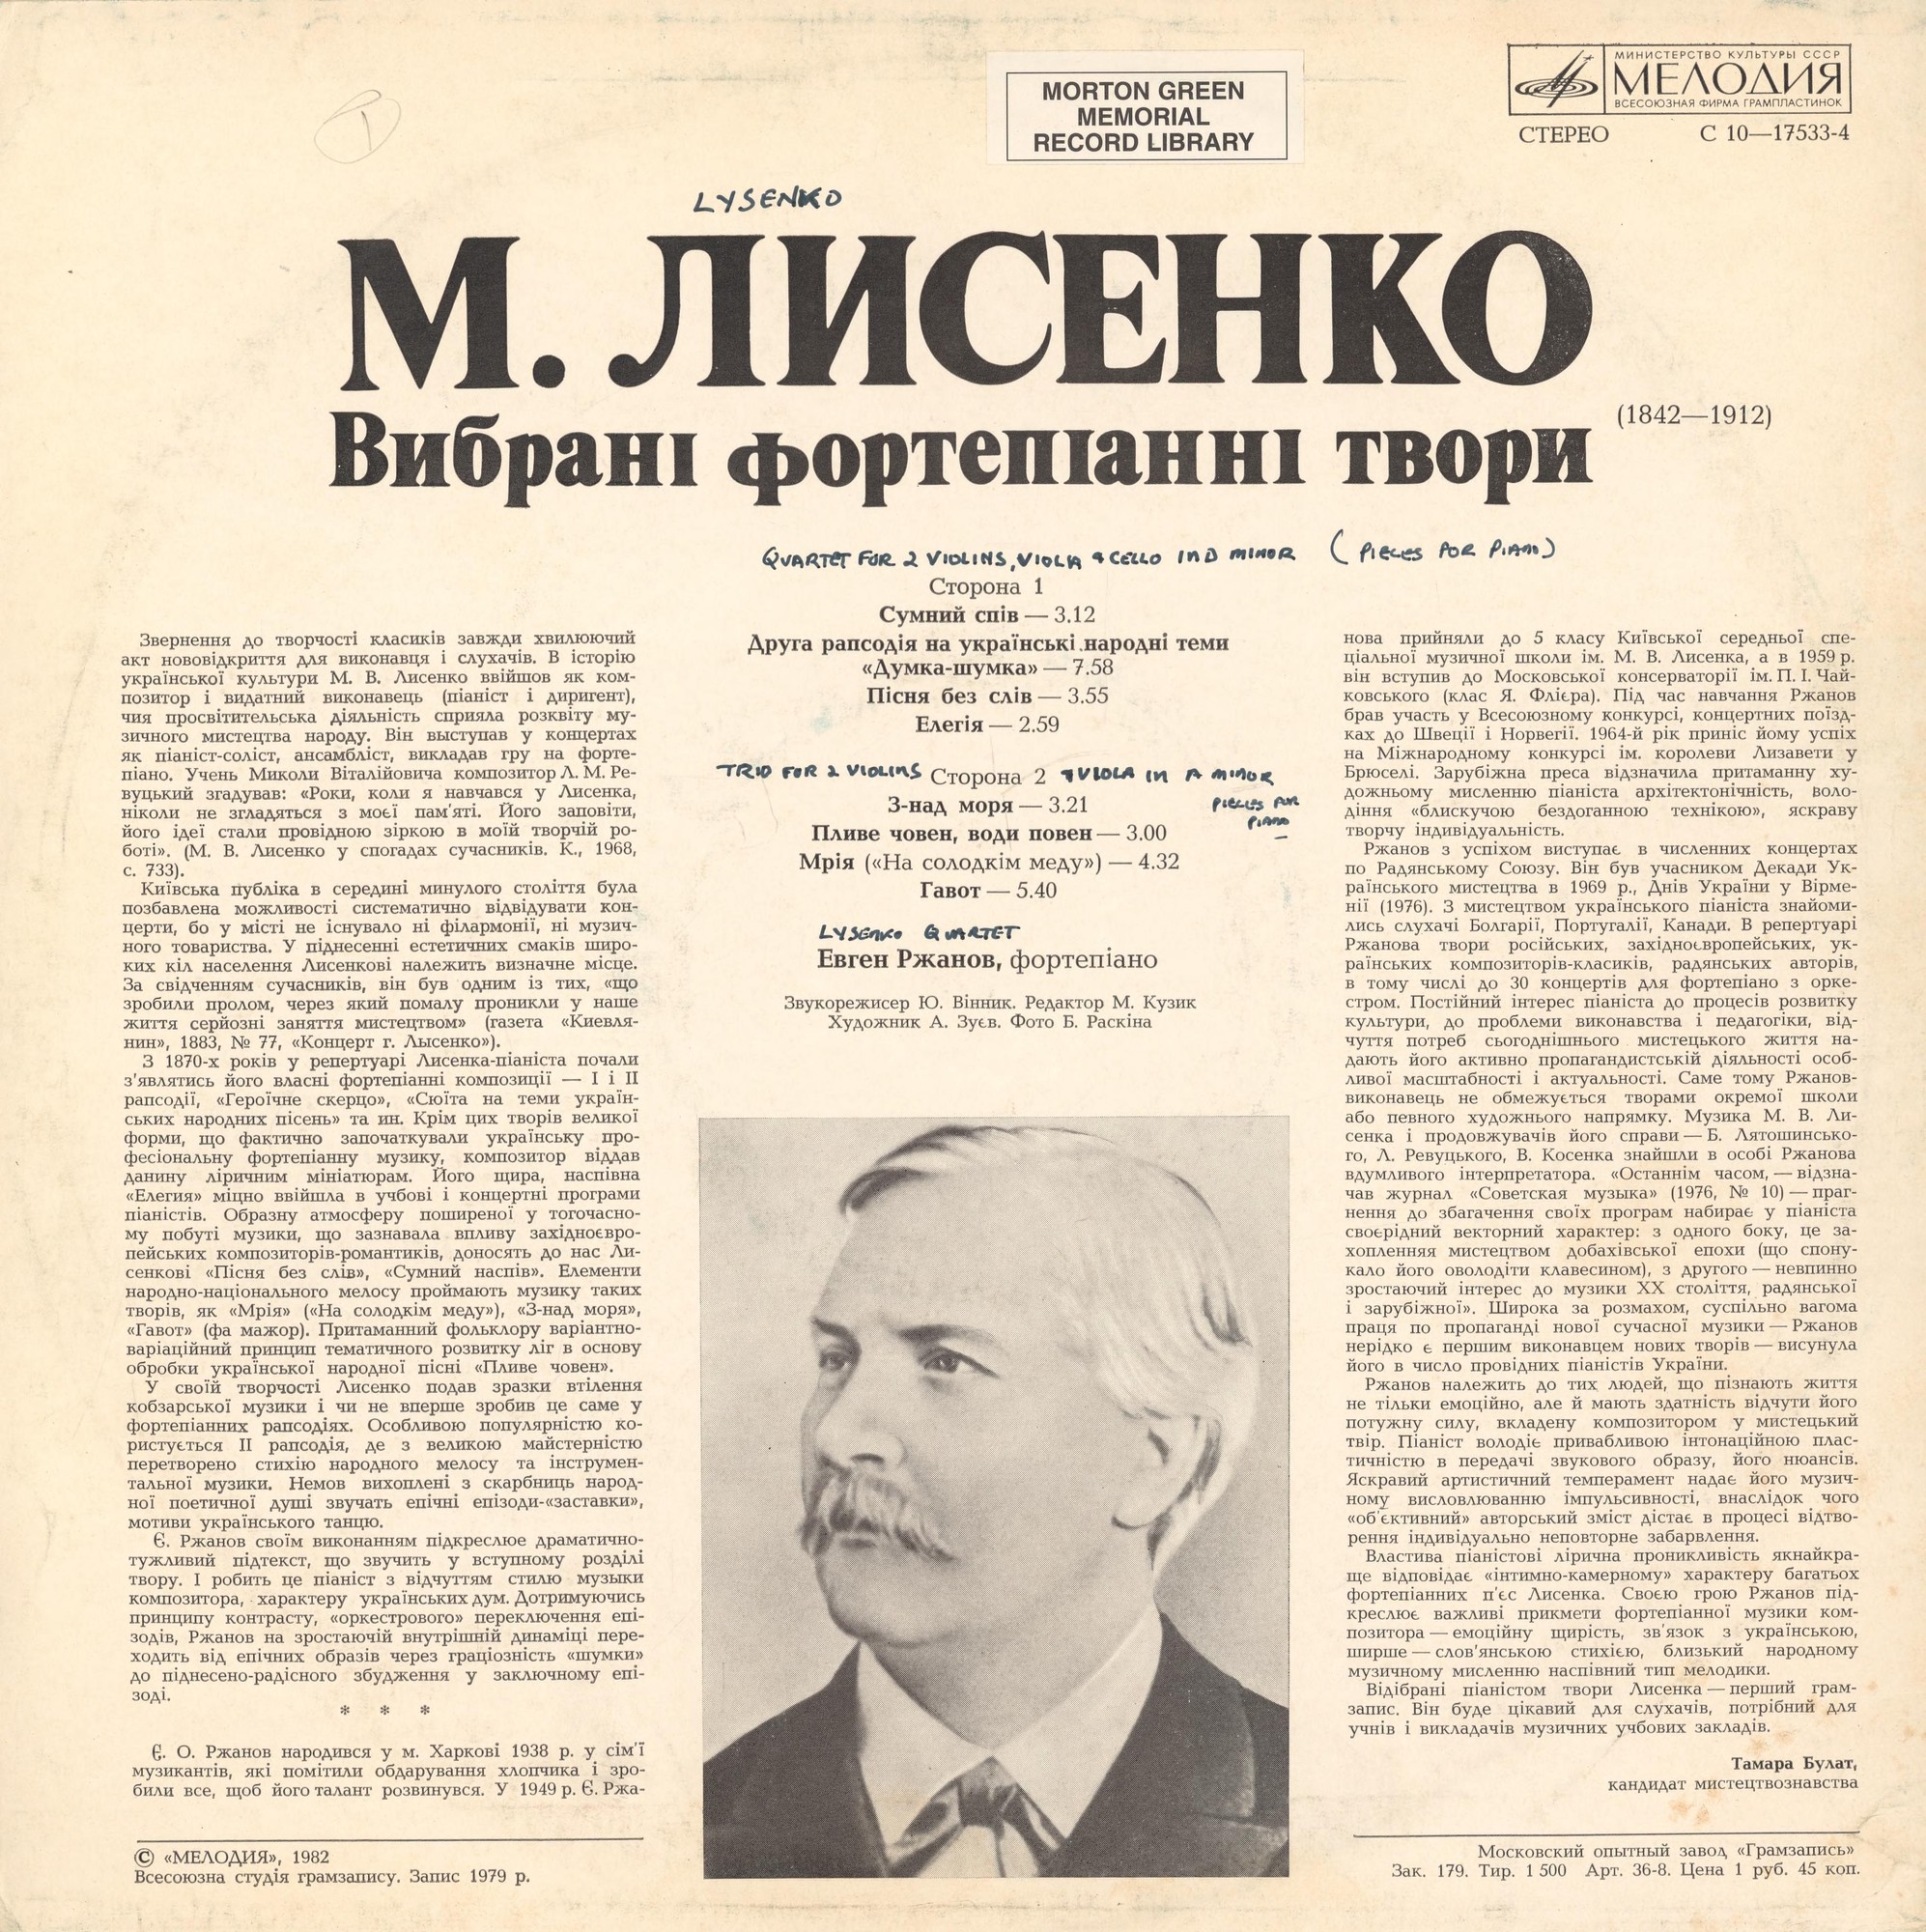 Н. ЛЫСЕНКО (1842-1912): Избранные фортепианные произведения (Е. Ржанов)